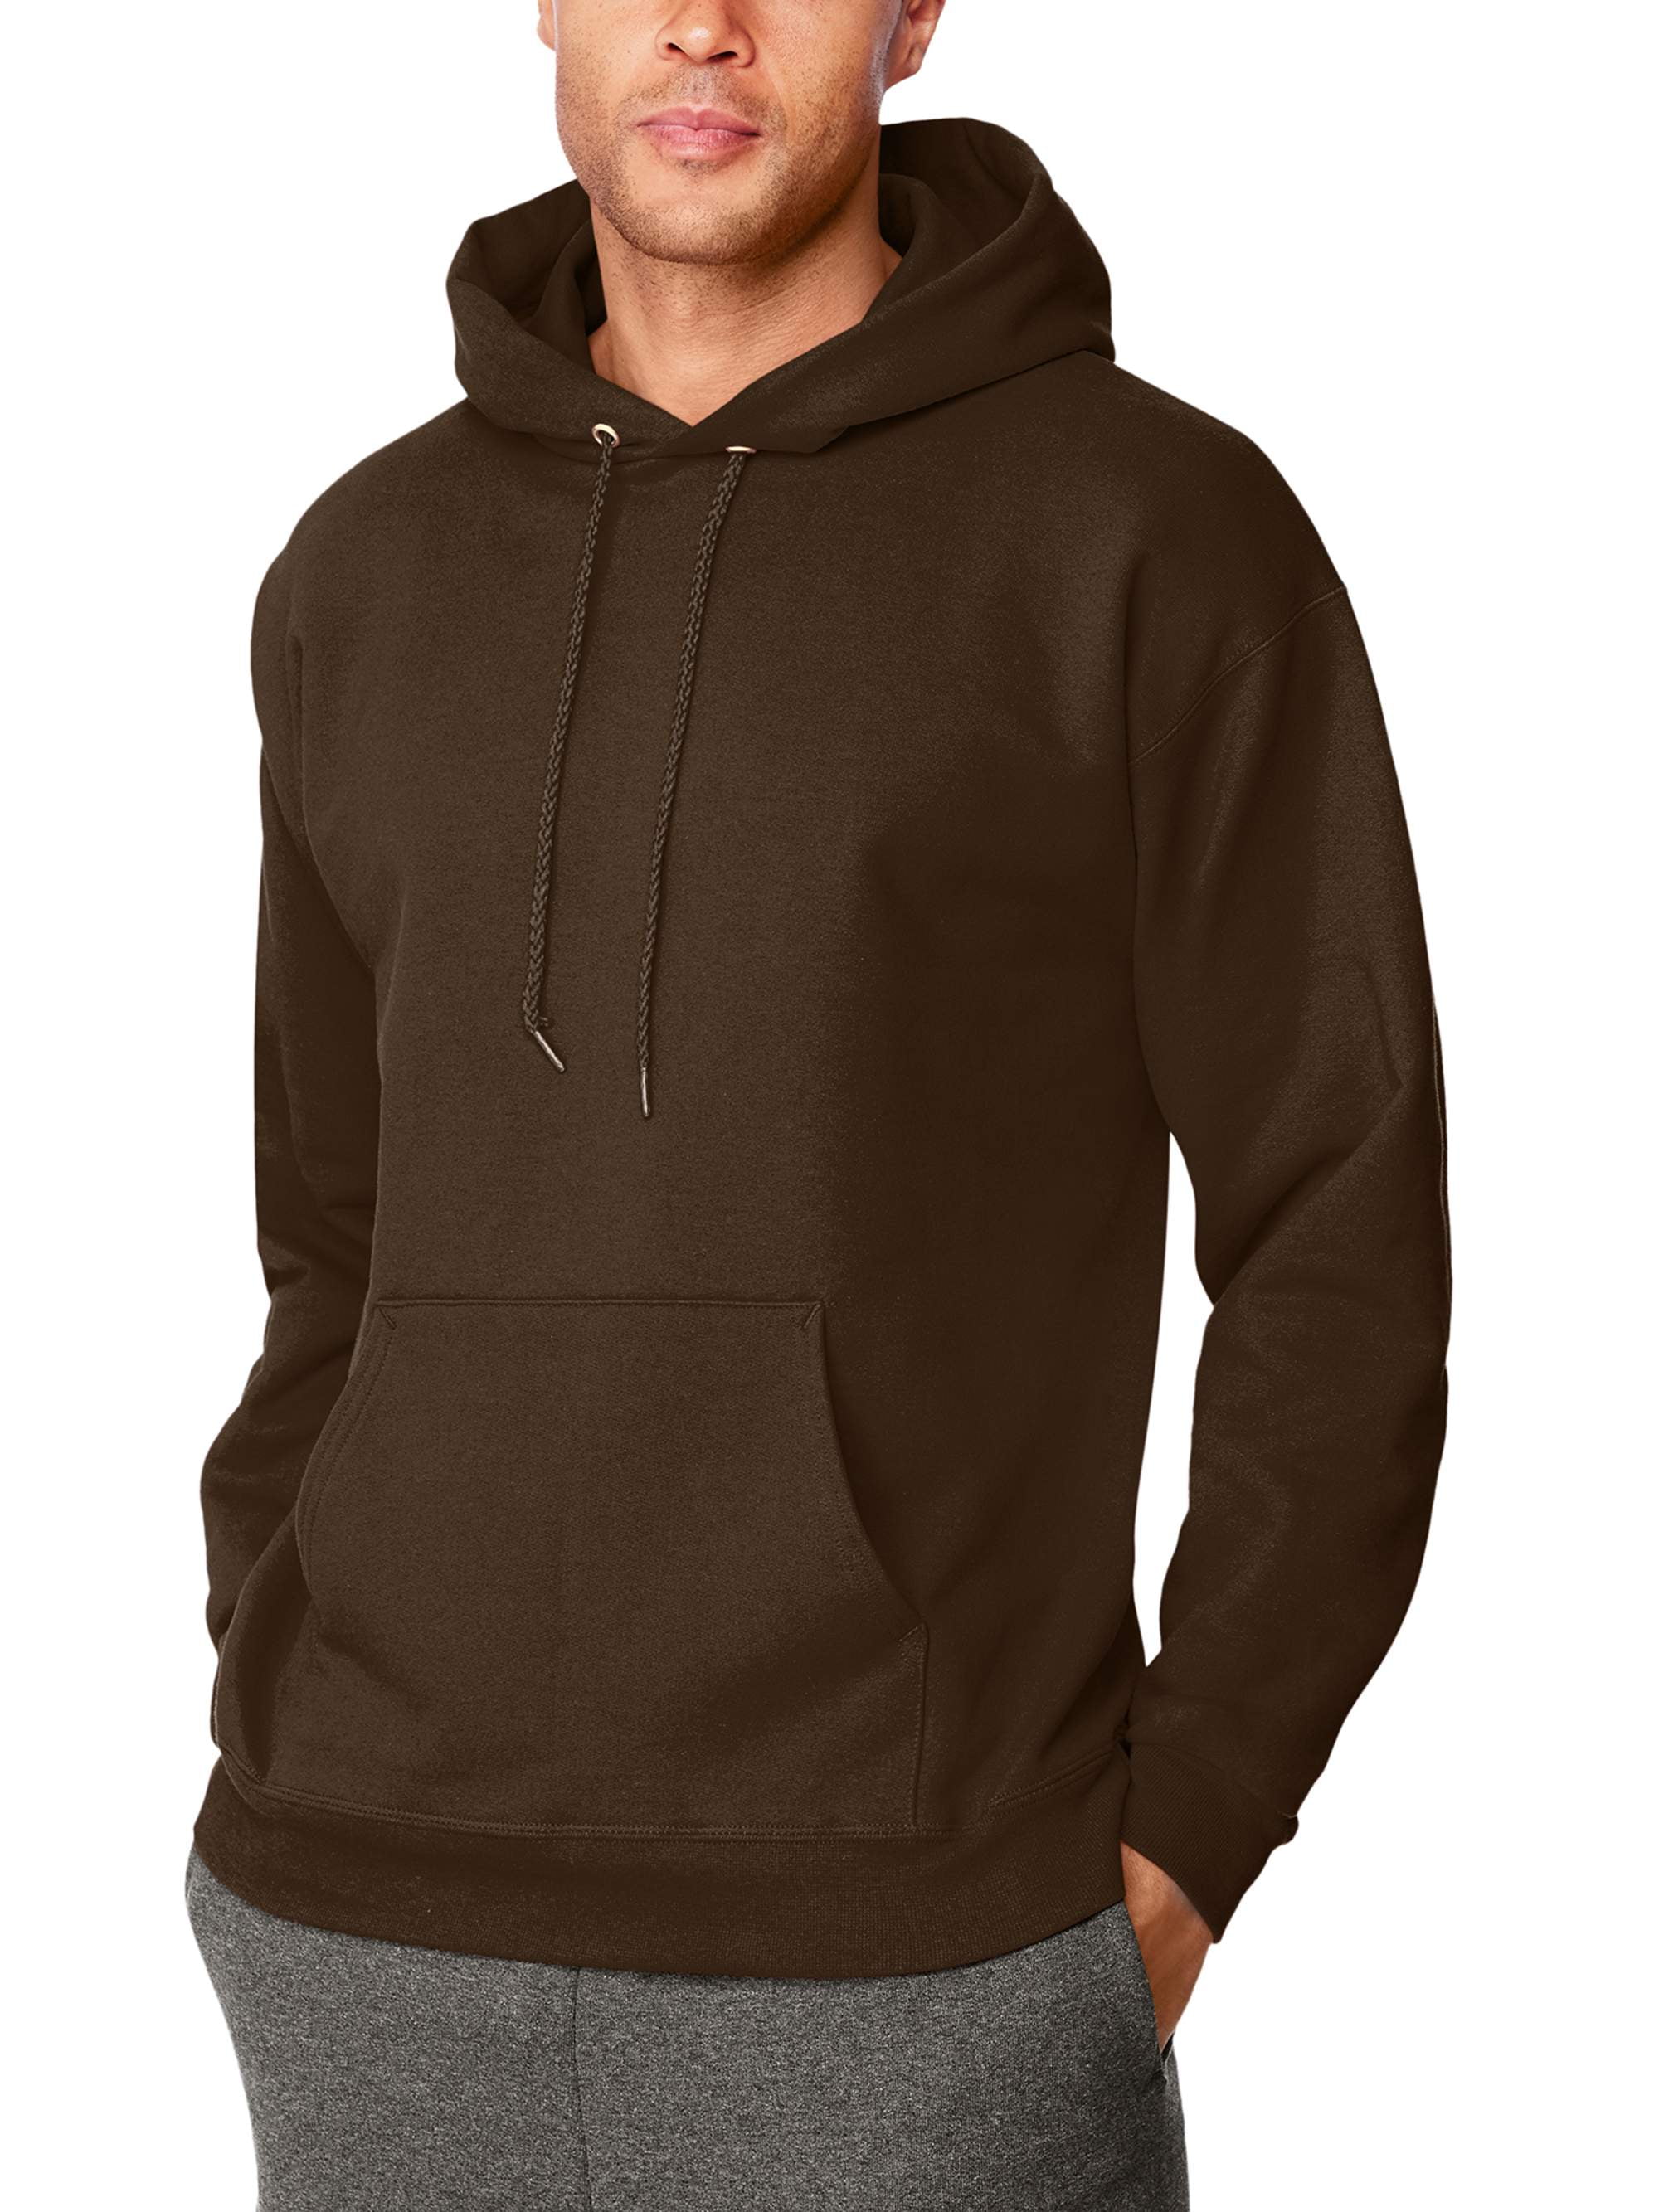 Men's Full Zip Hoodie Hanes Ultimate Sweatshirt Cotton Heavyweight Fleece Warm 